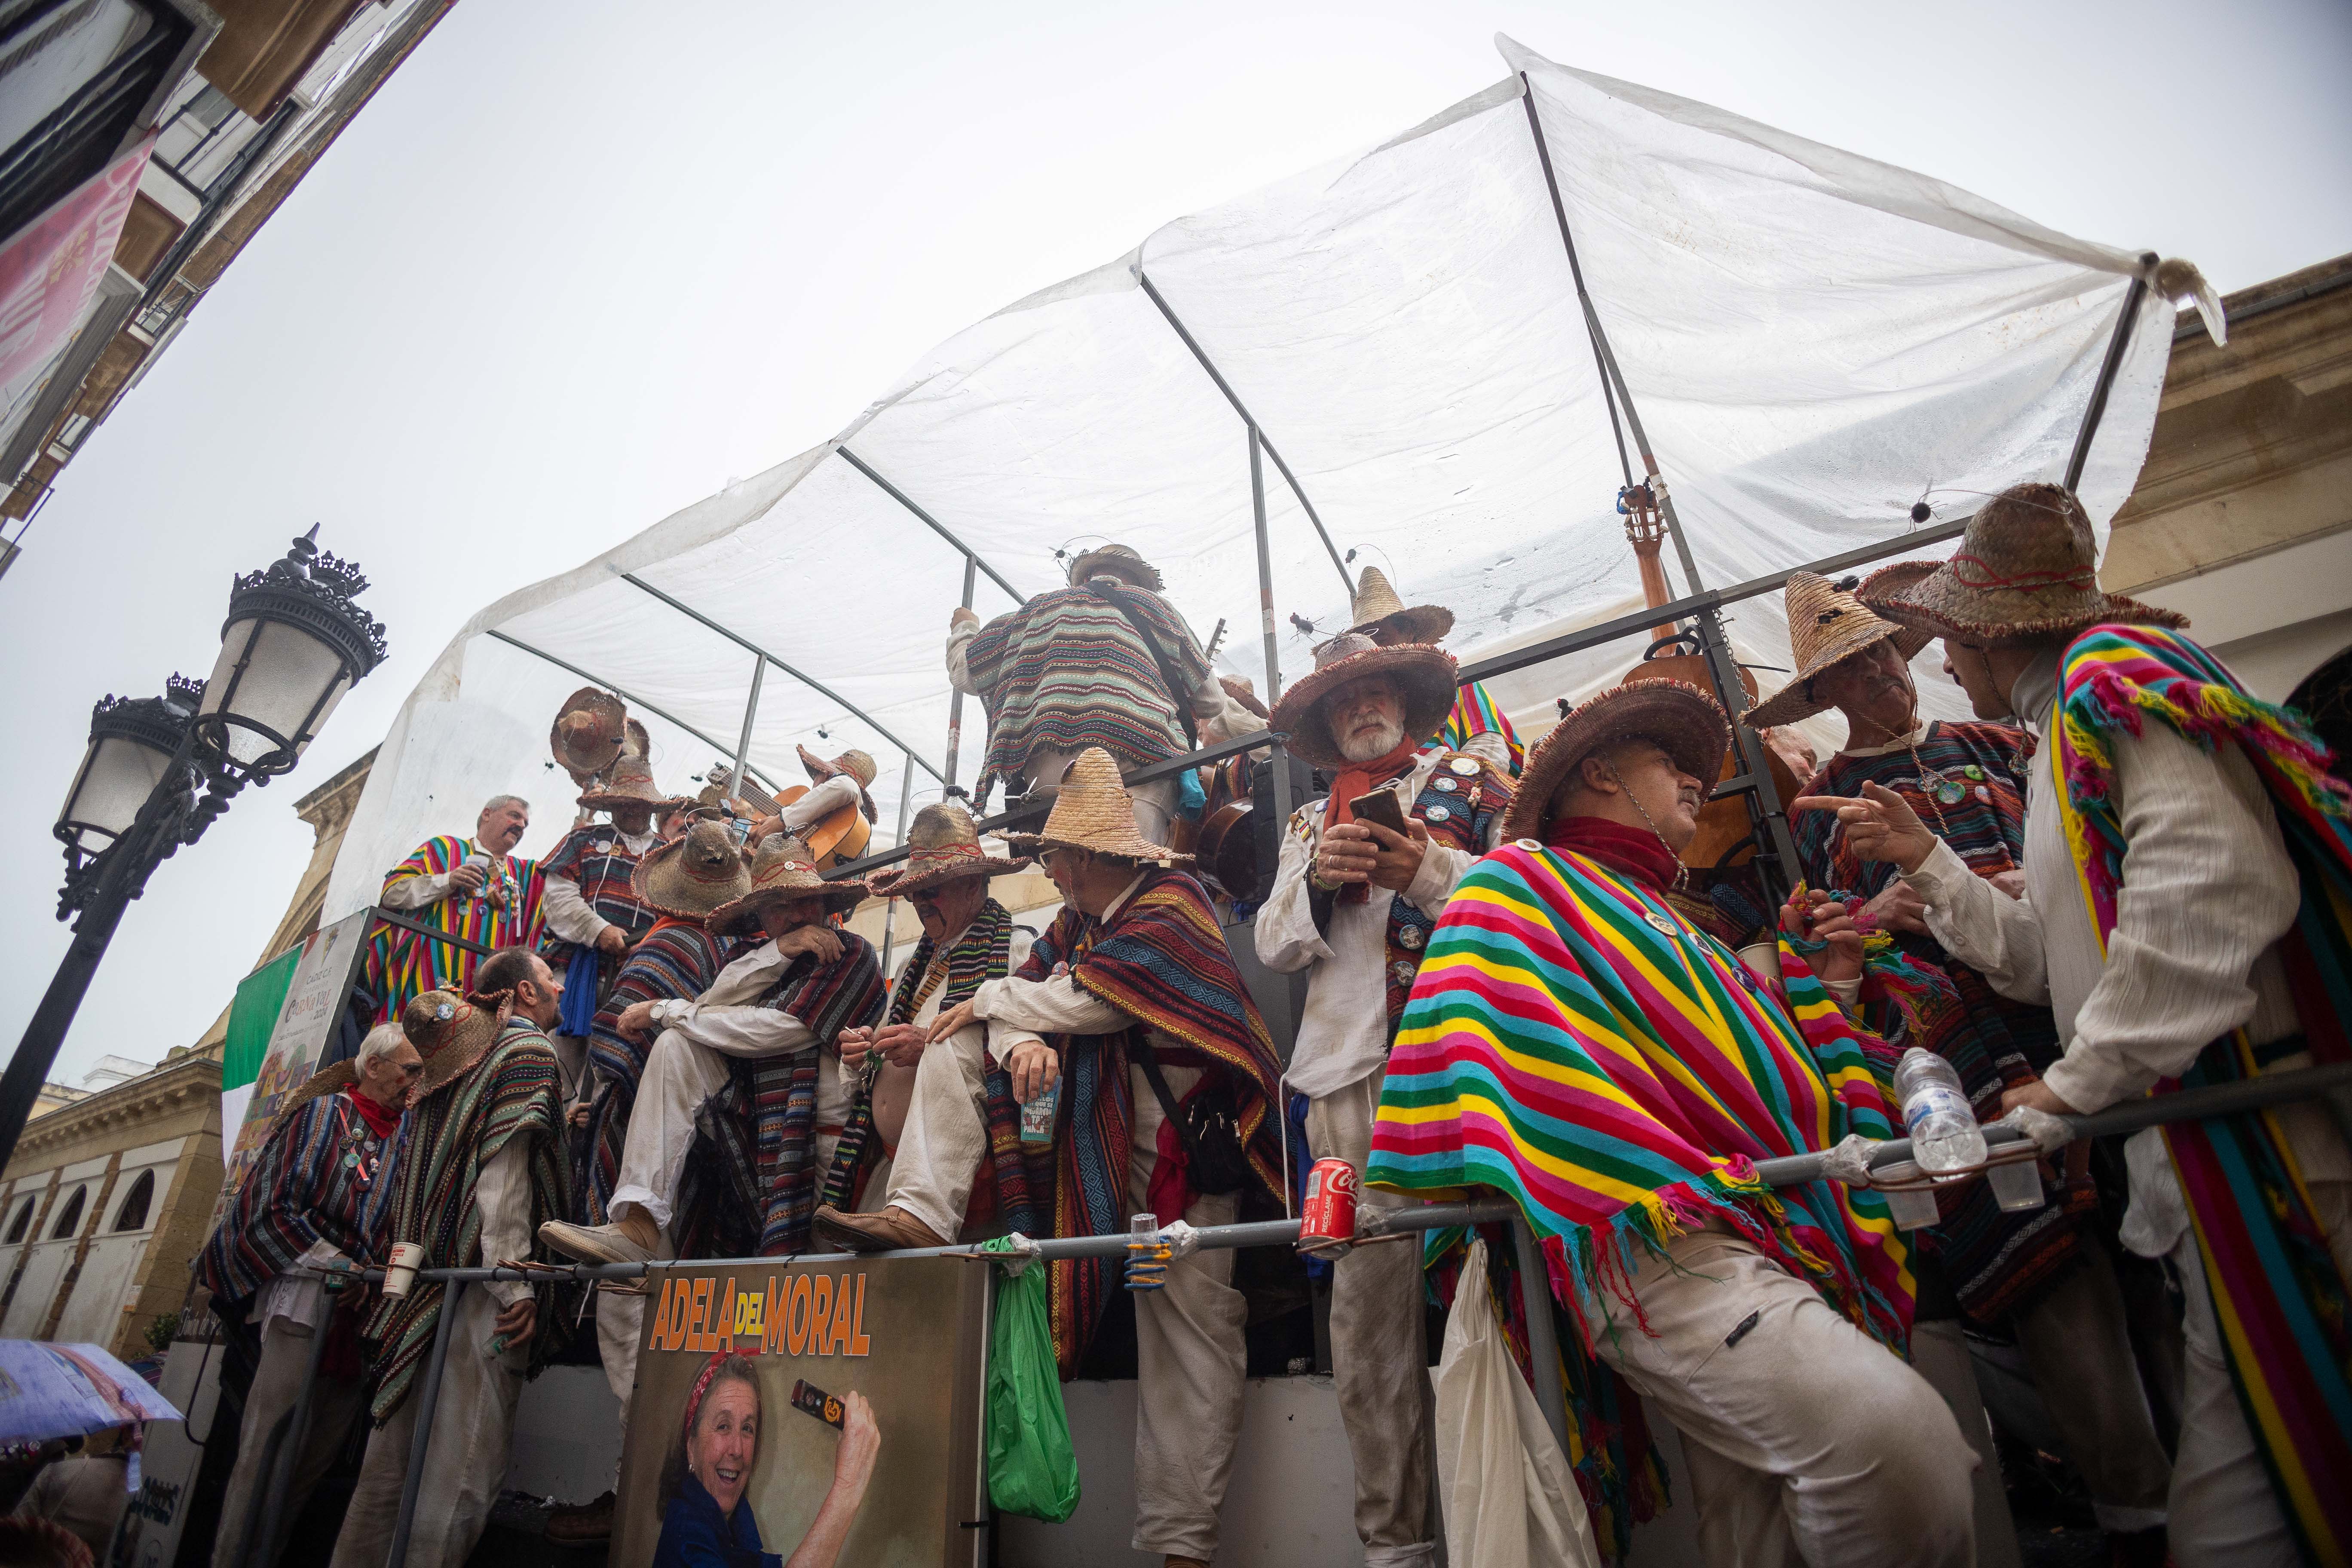 El lunes de carnaval en Cádiz, marcado por la lluvia, en imágenes.